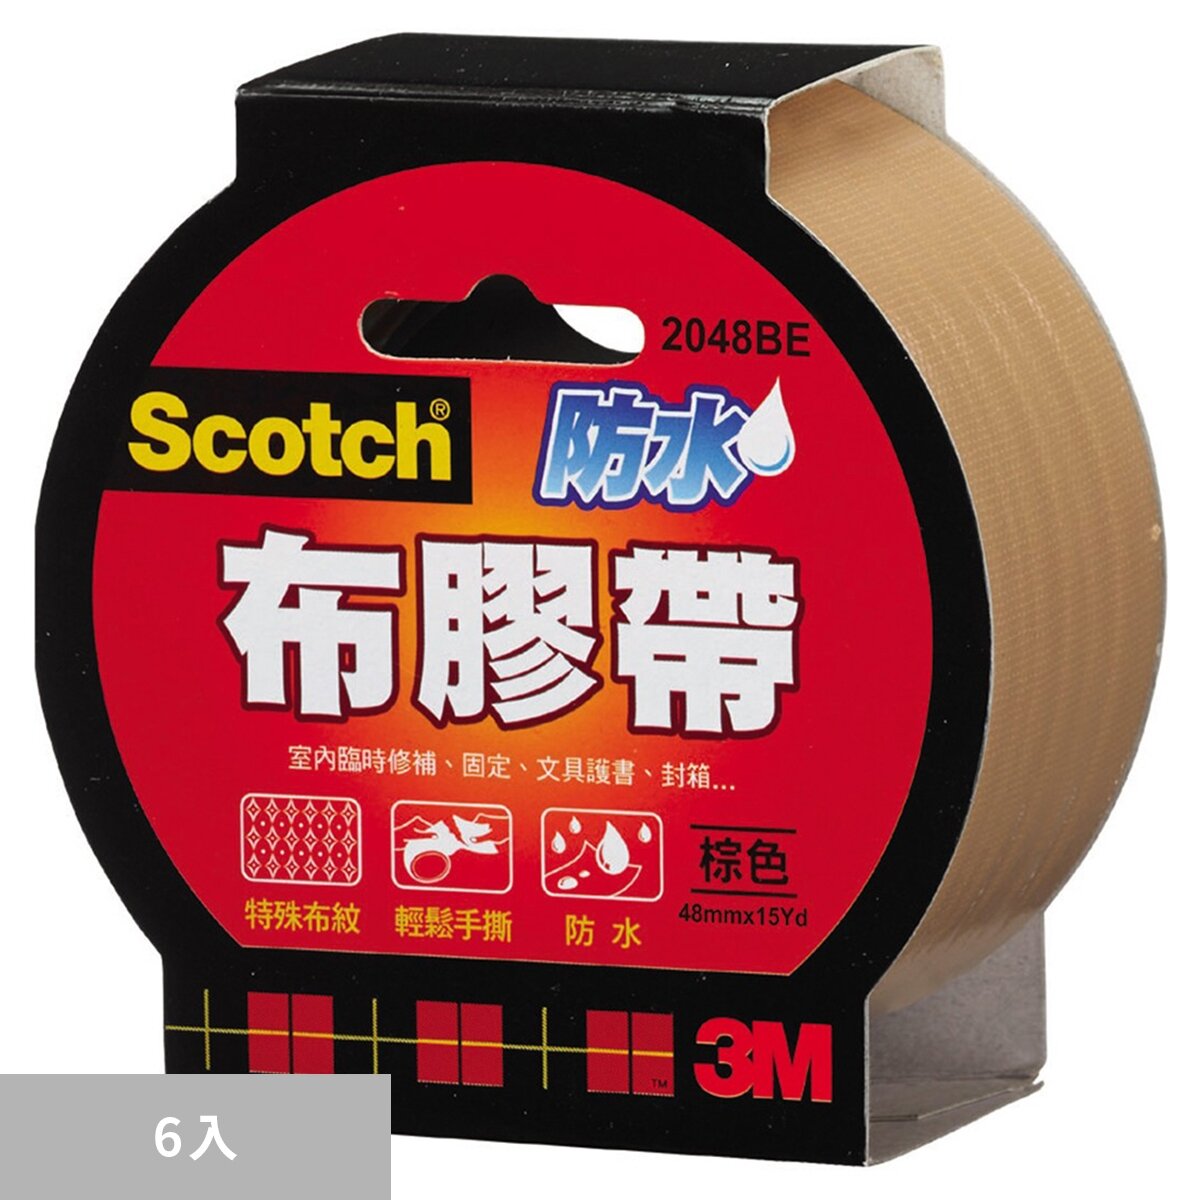 3M Scotch 棕色防水布膠帶 48公釐 X 15碼 X 6入 2048BE